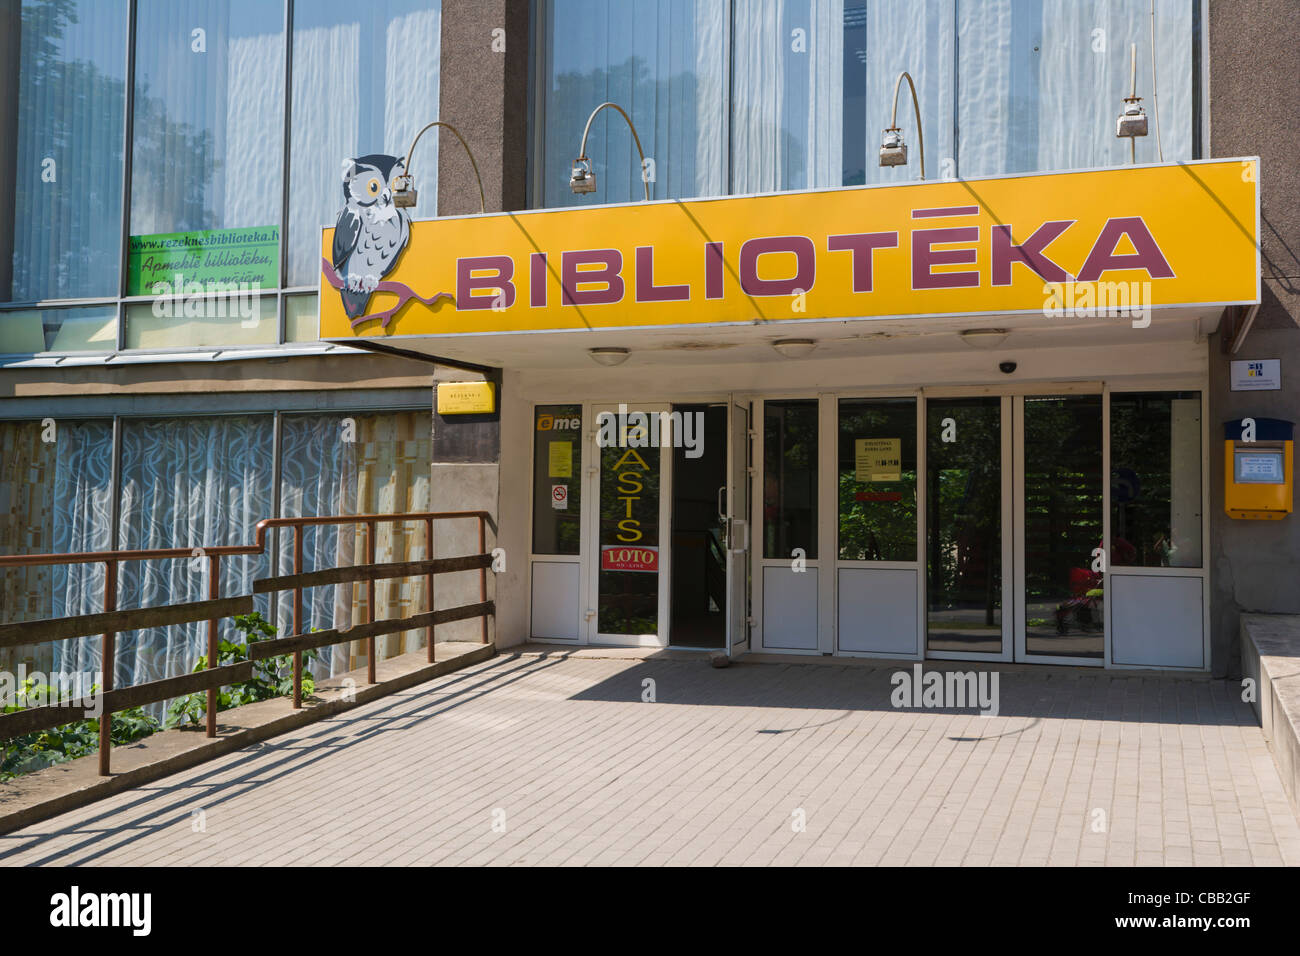 Bibliothèque, Atbrivosanas Atbrivosanas Aleja, Avenue, Rezekne, Latgale, la Lettonie Banque D'Images